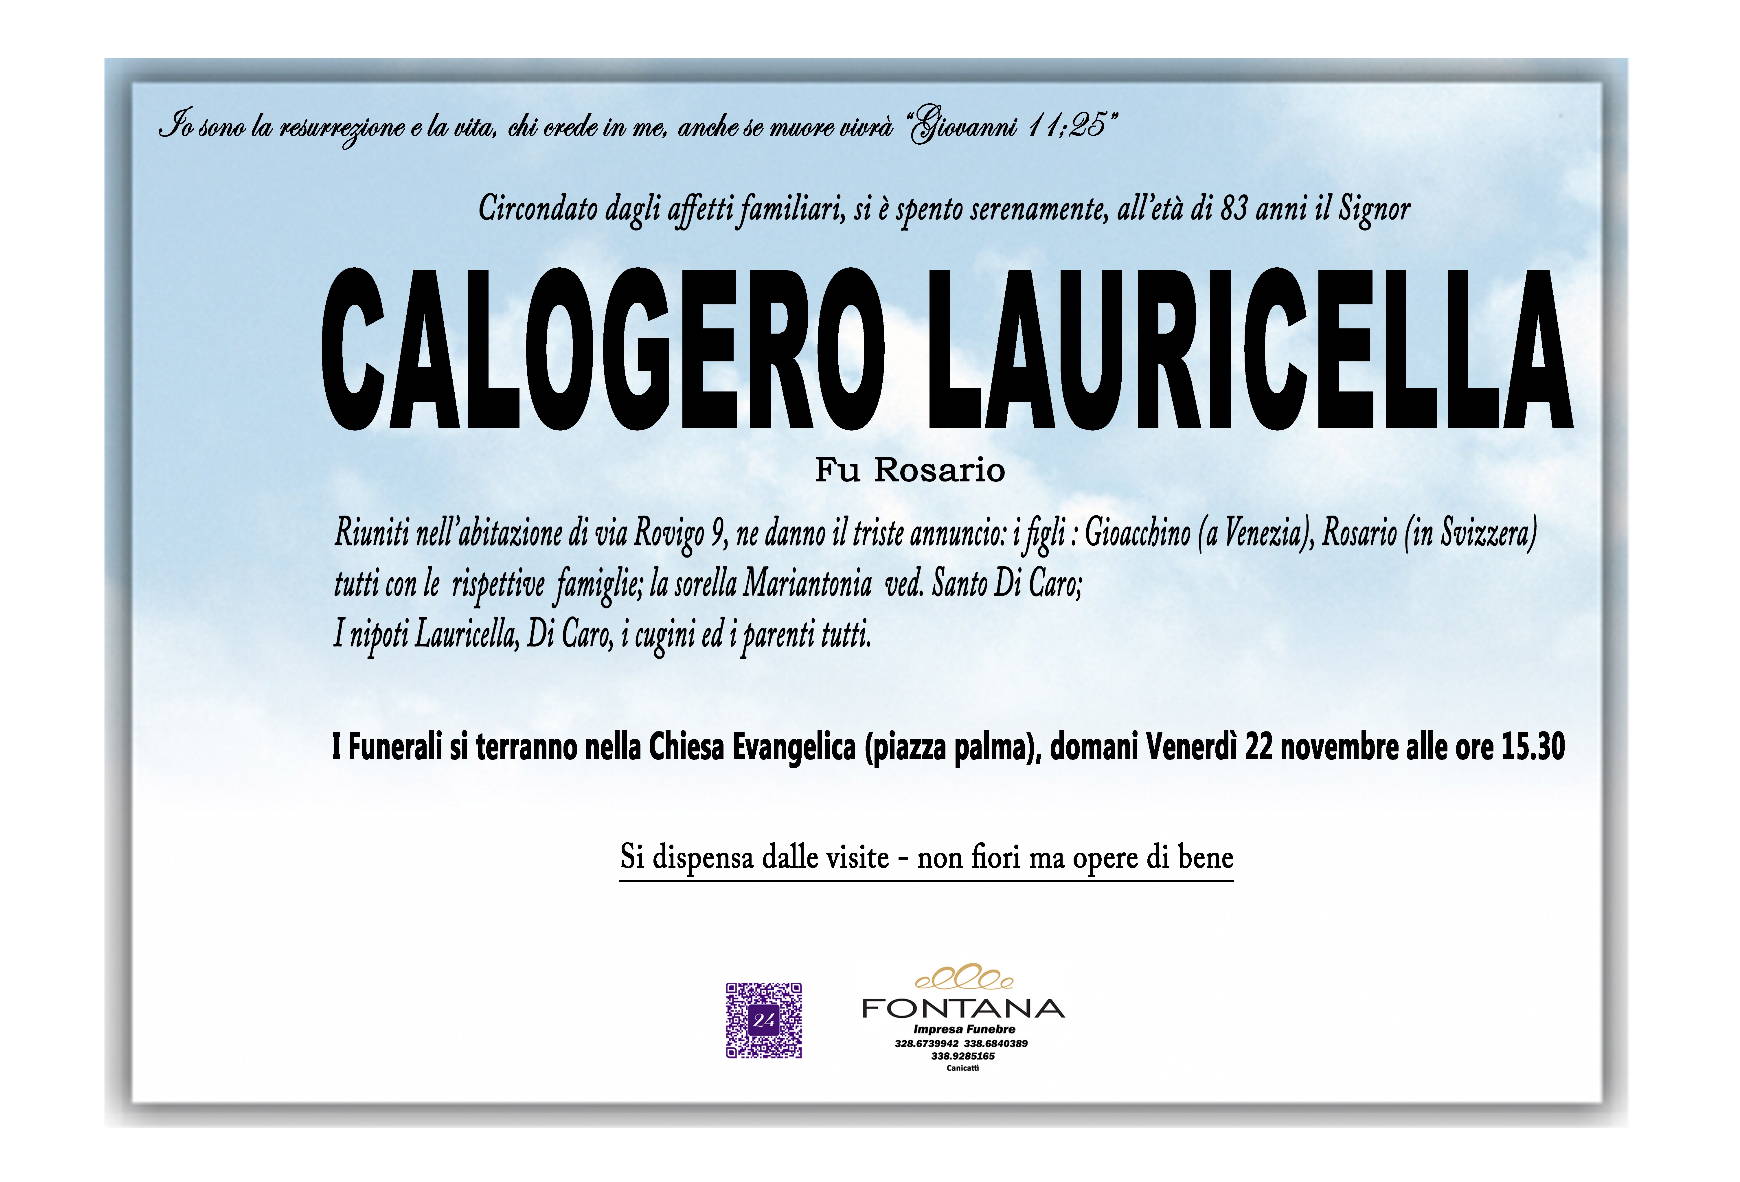 Calogero Lauricella